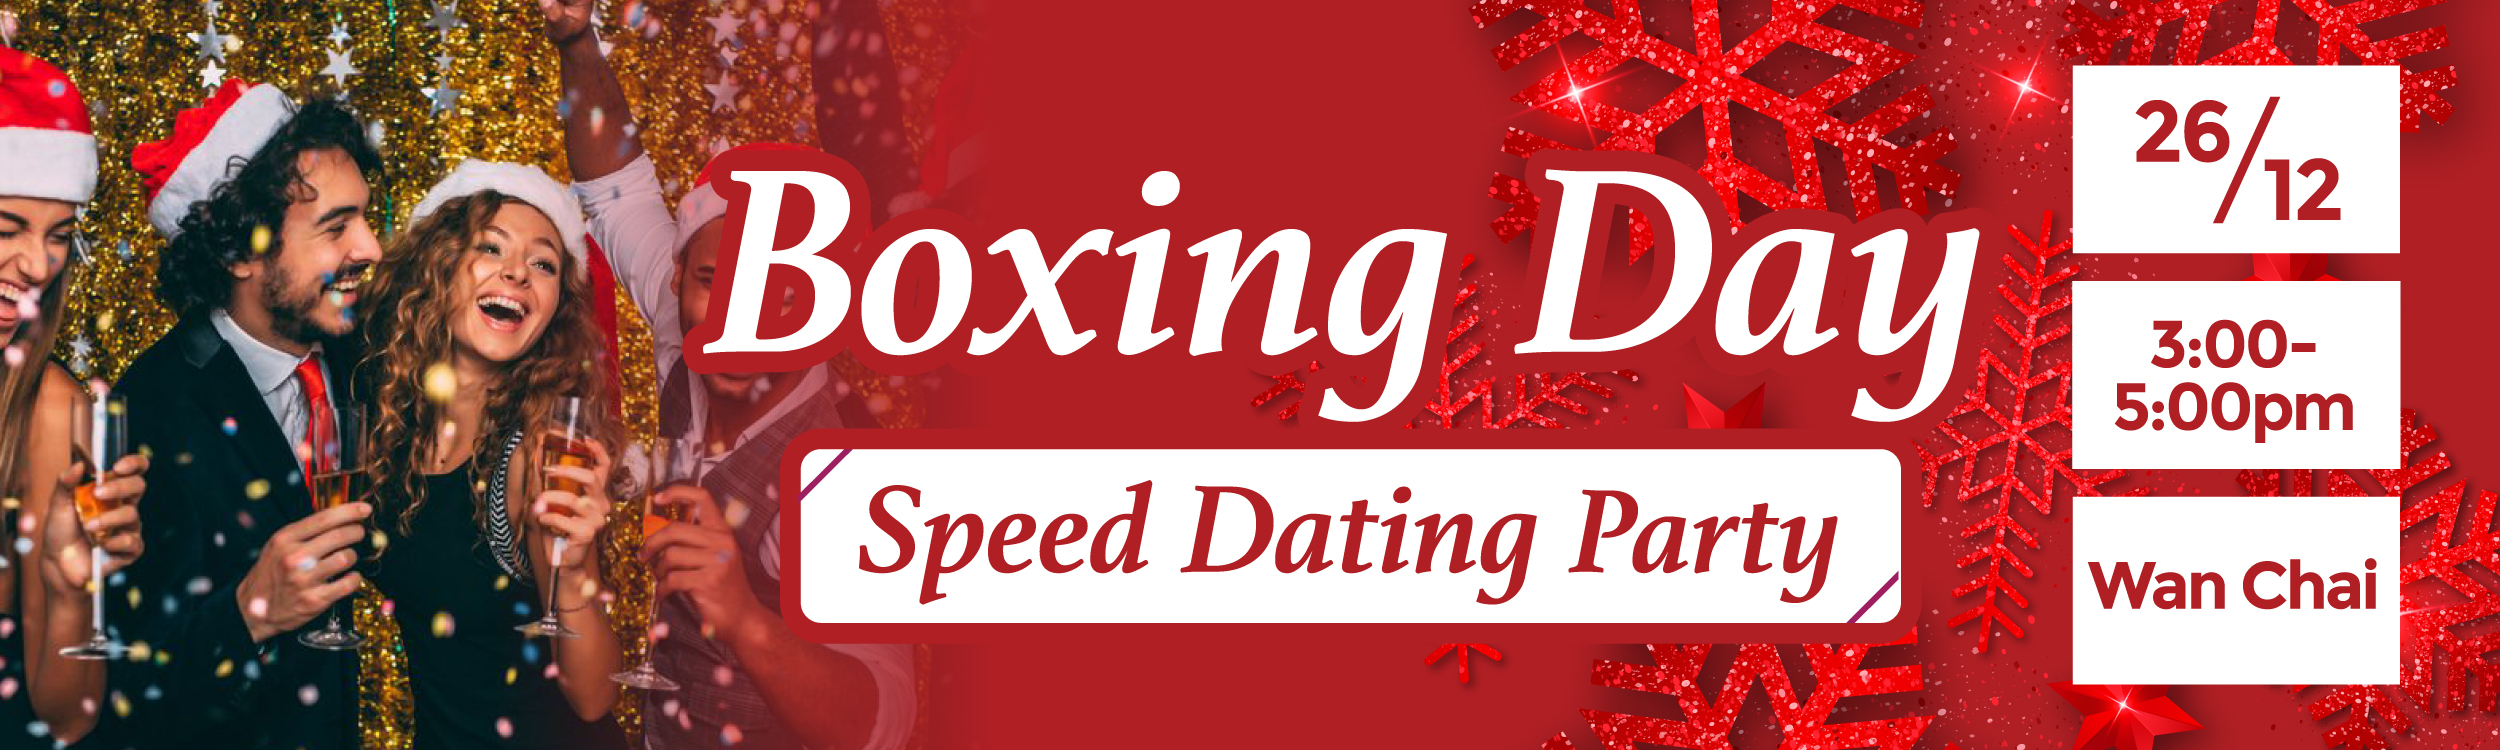 最新Speed Dating約會消息: Boxing Day Speed Dating Party ‧ Remain M:0 F:9